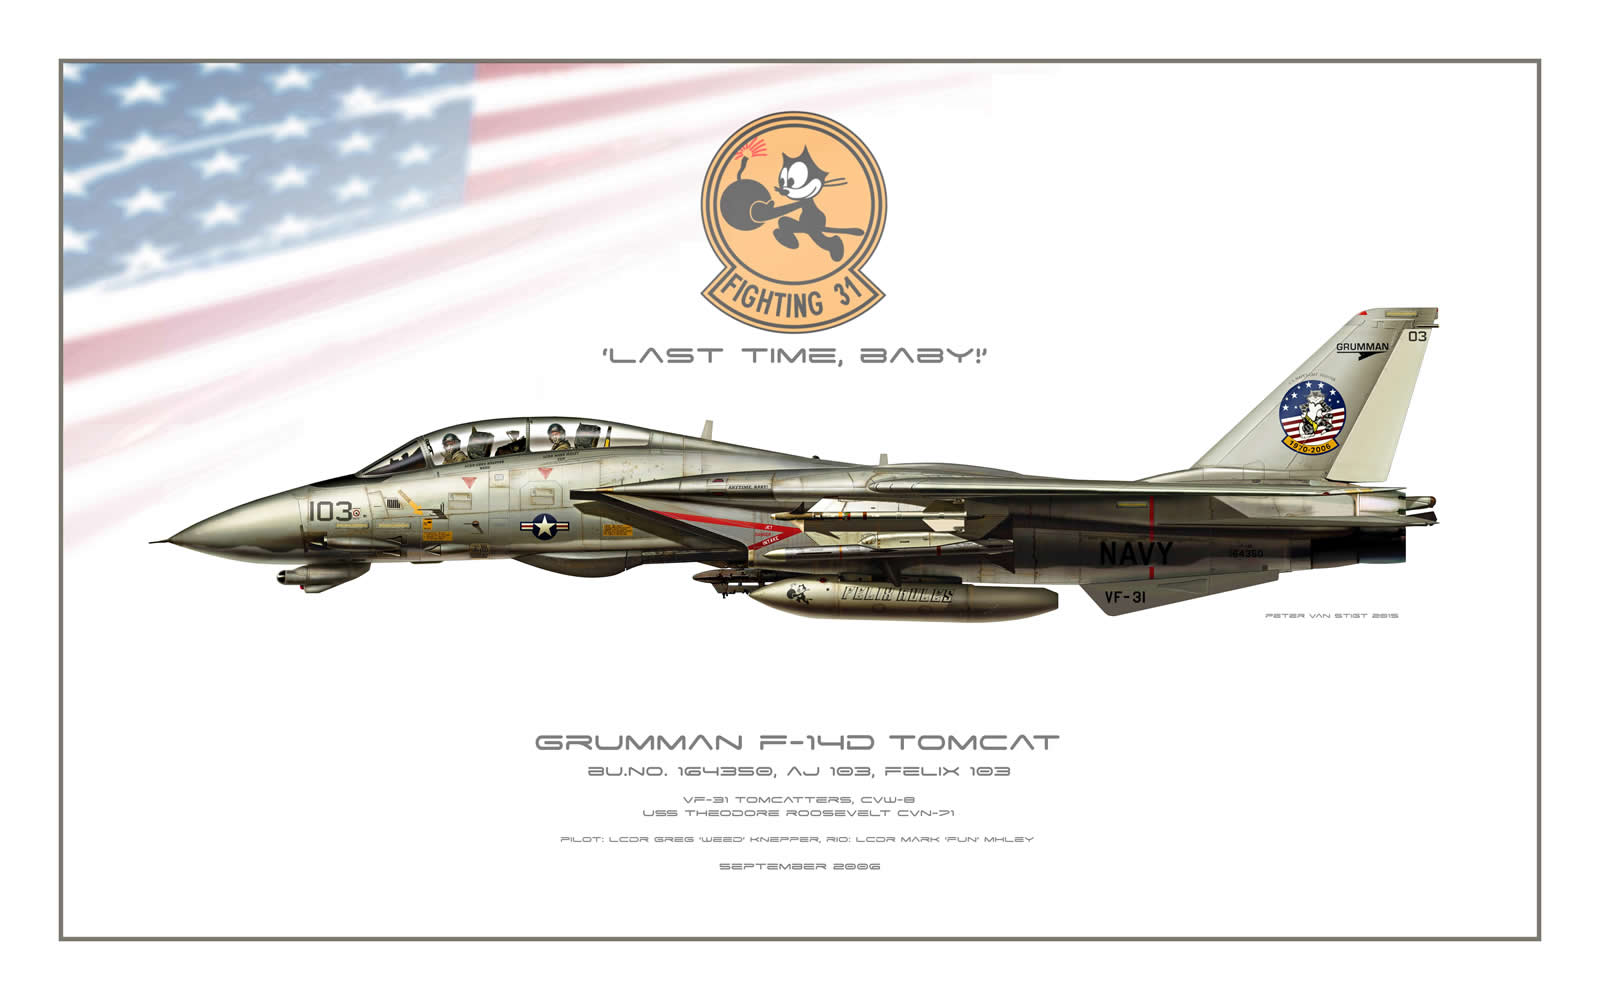 VF-31 2006 Scheme F-14 Tomcat Profile